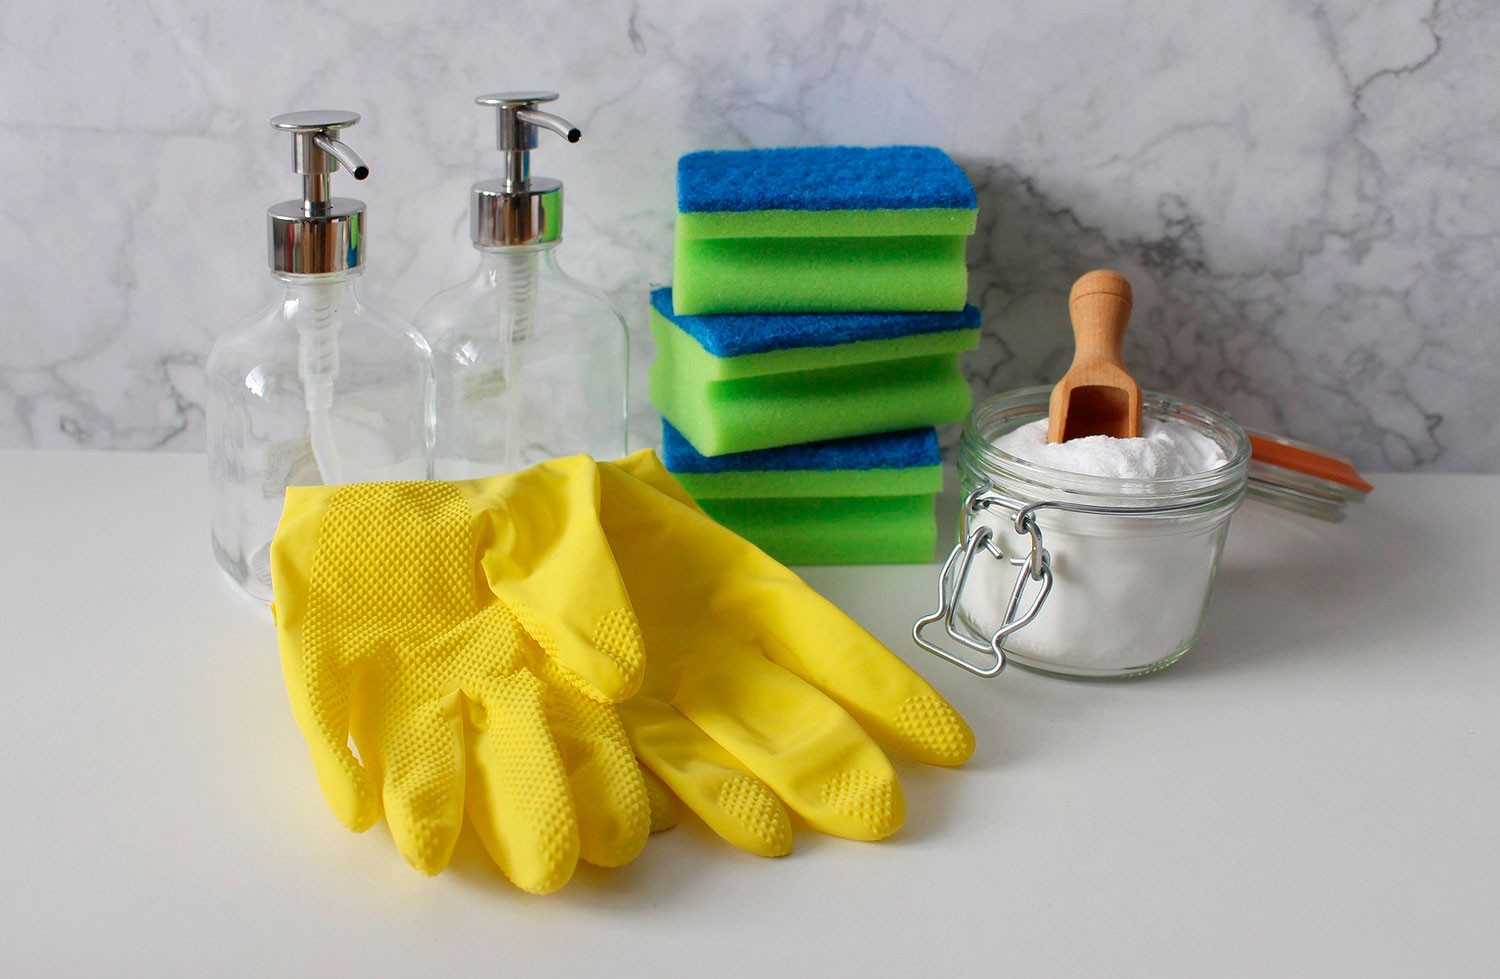 Na hora da limpeza, todo cuidado deve ser mantido. Então proteja-se e sempre use luvas e roupas que cubram toda a pele (Foto: Pixabay/Monfocus/CreativeCommons)